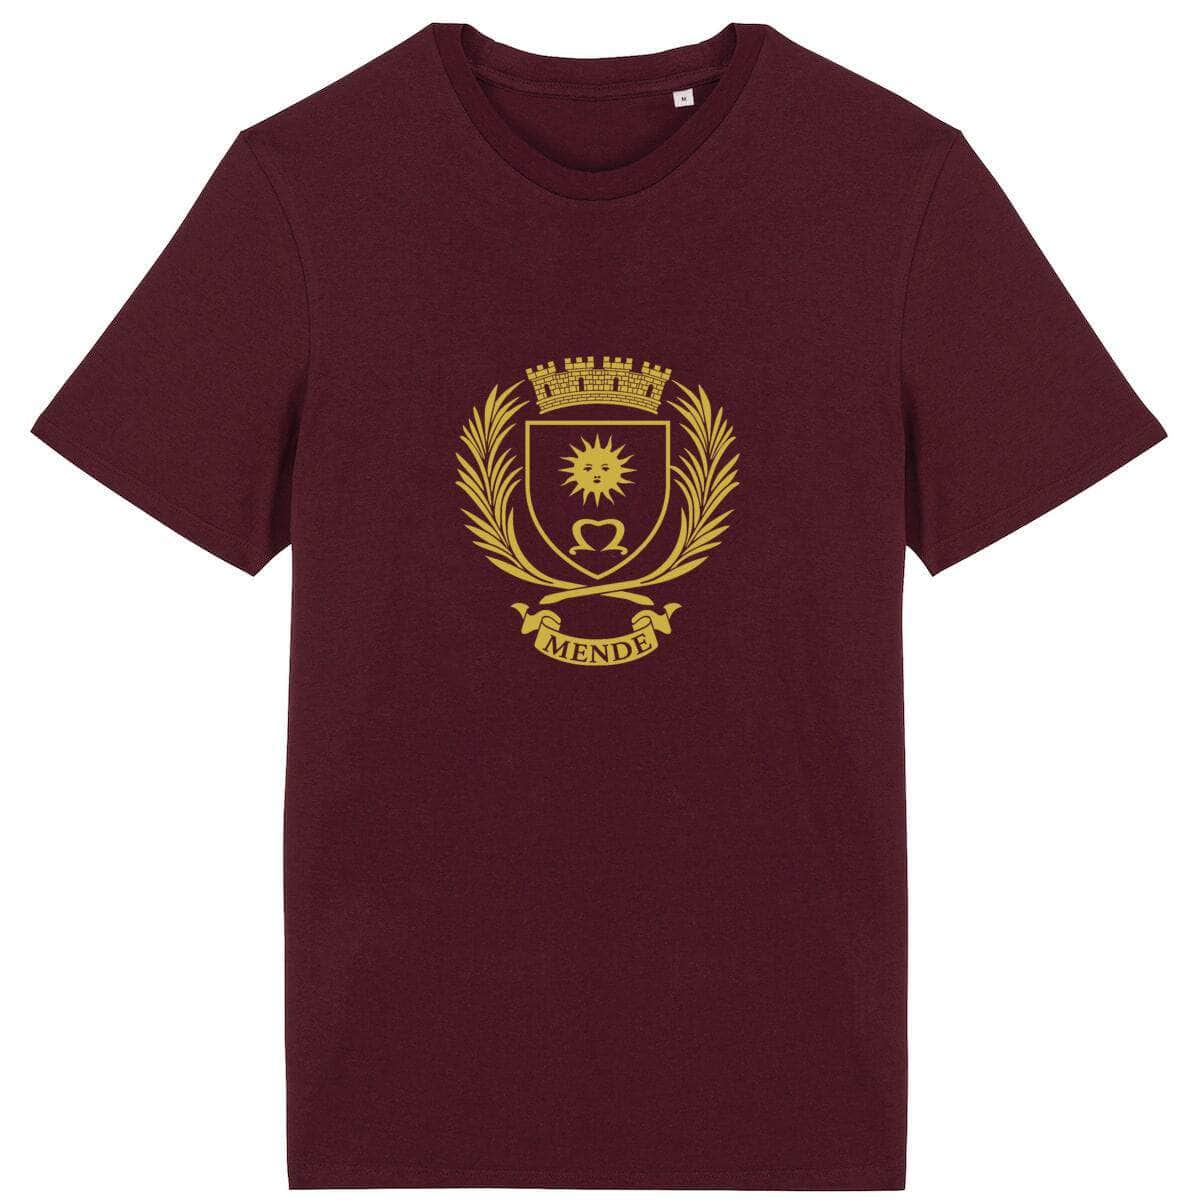 T-shirt - Armoiries de Mende Bordeaux / XS